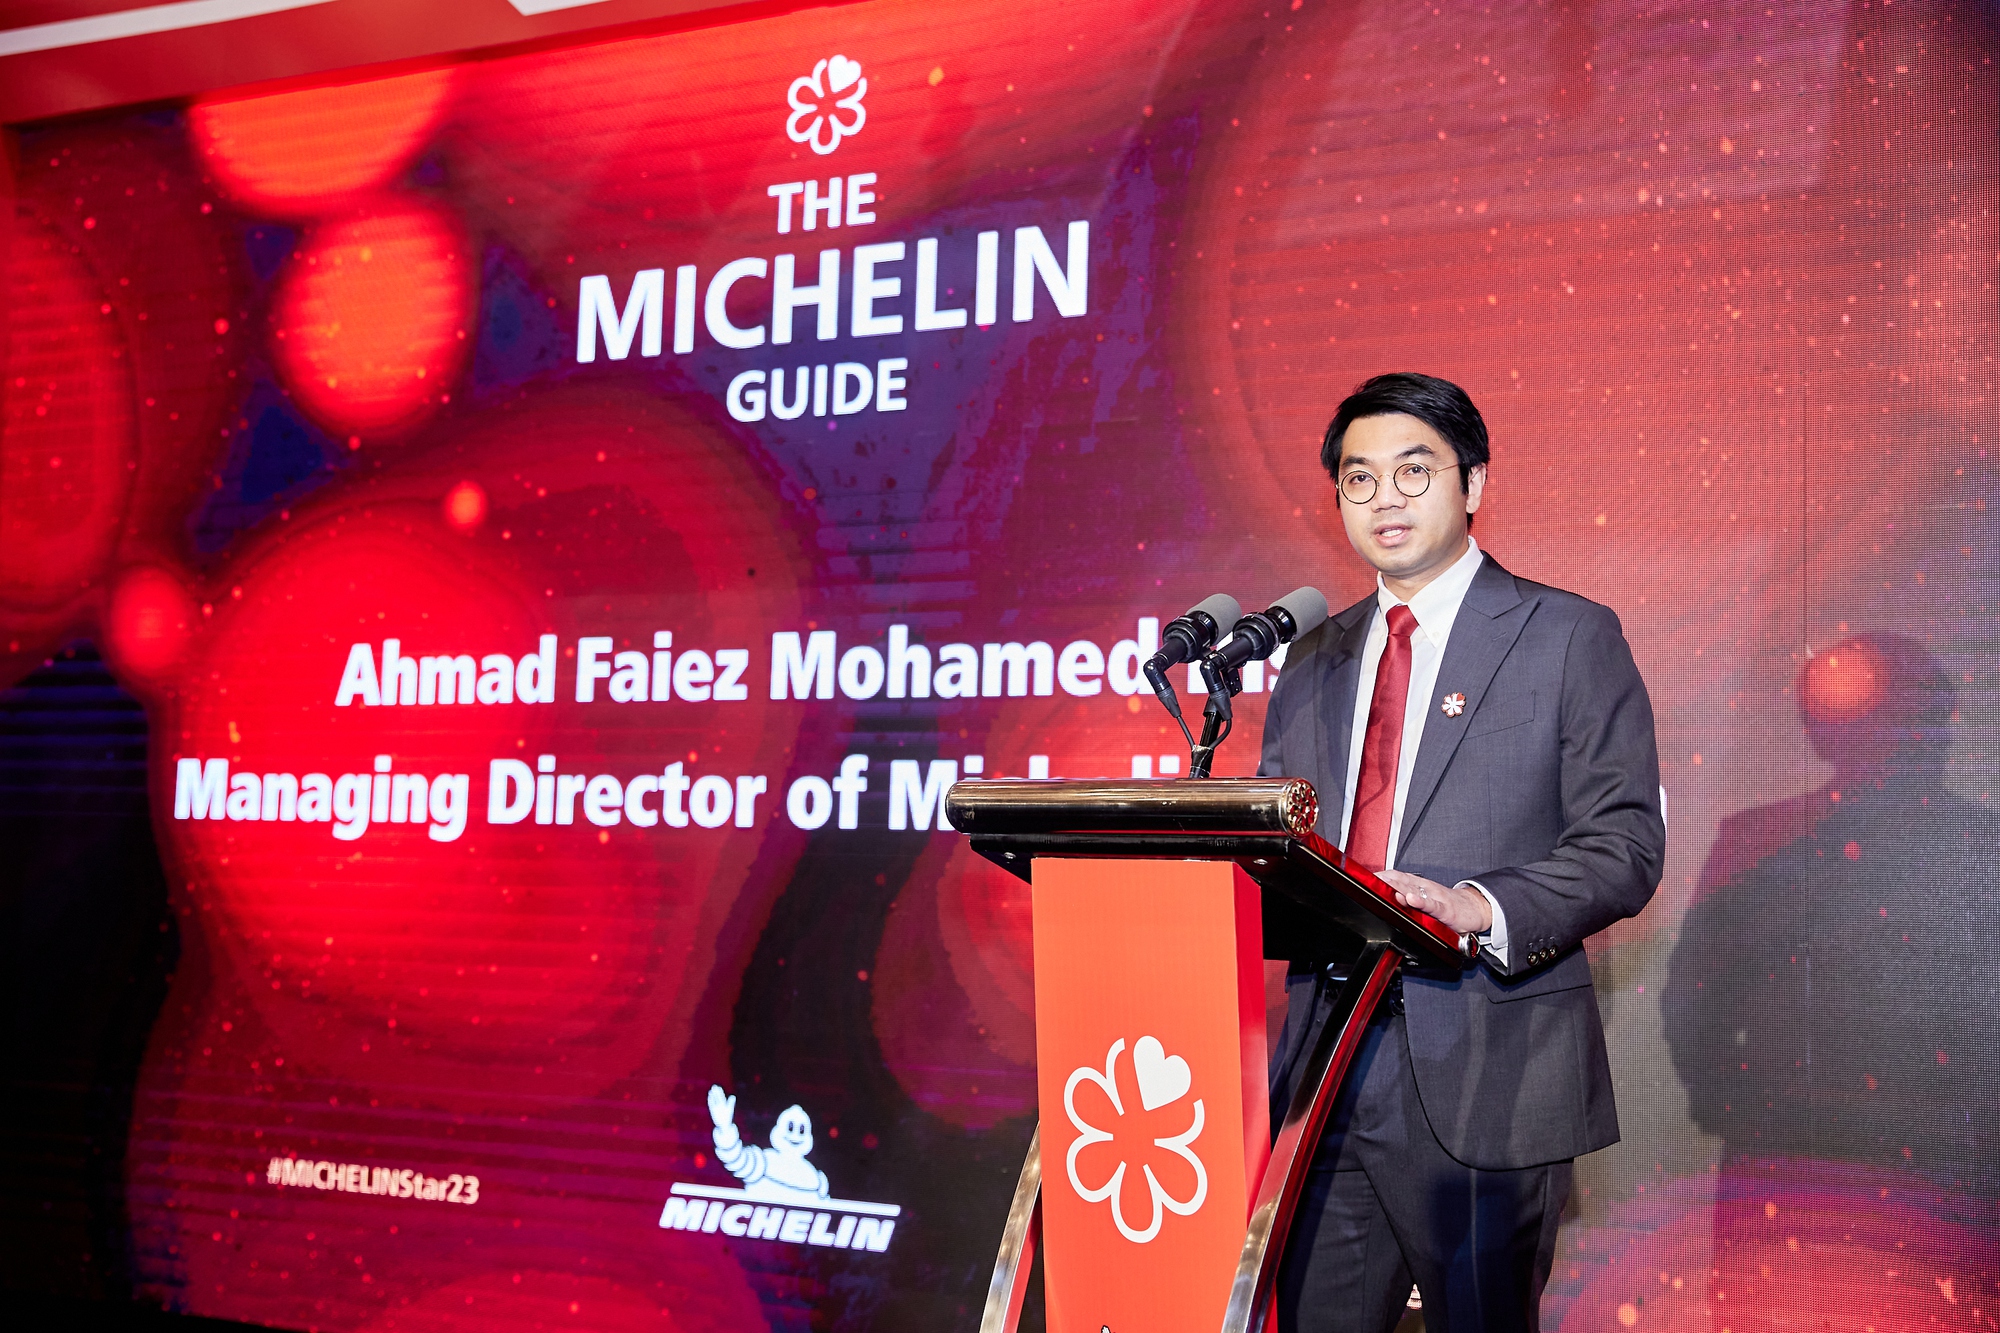 Sun Group đồng hành cùng Michelin đưa tinh hoa ẩm thực Việt Nam ra thế giới - Ảnh 1.